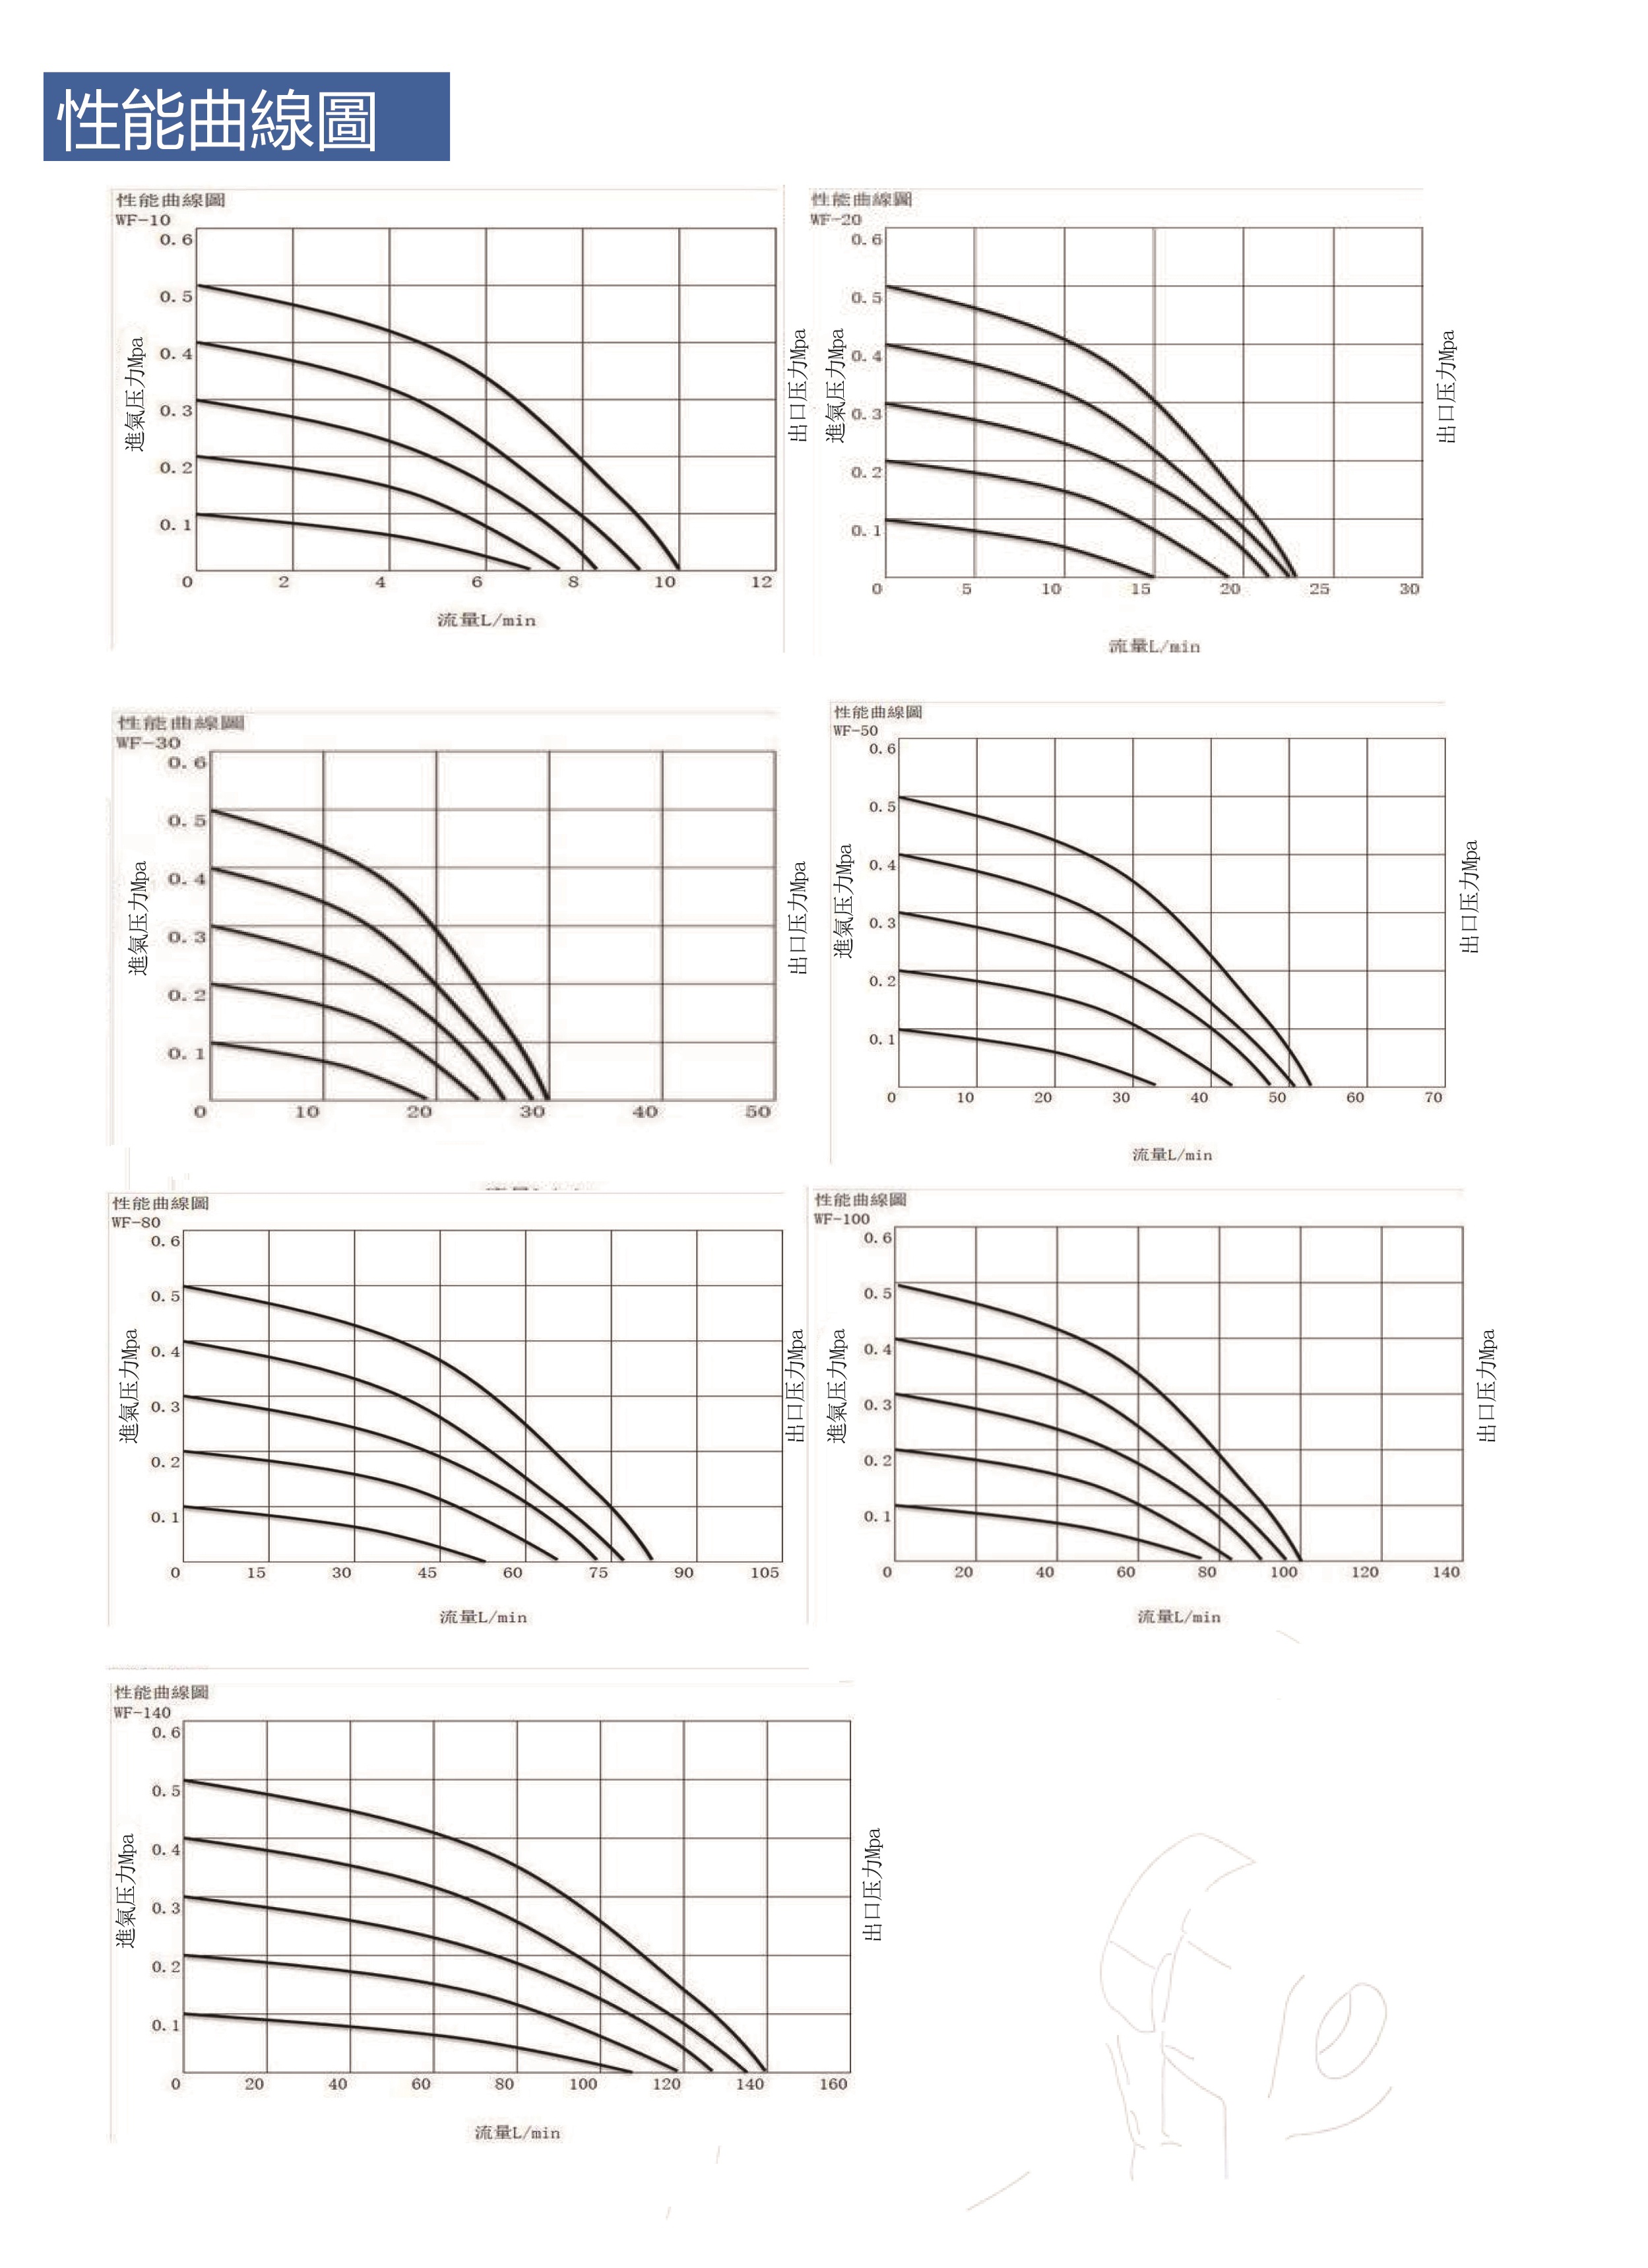 岩木WF-20H系列风囊泵性能曲线图